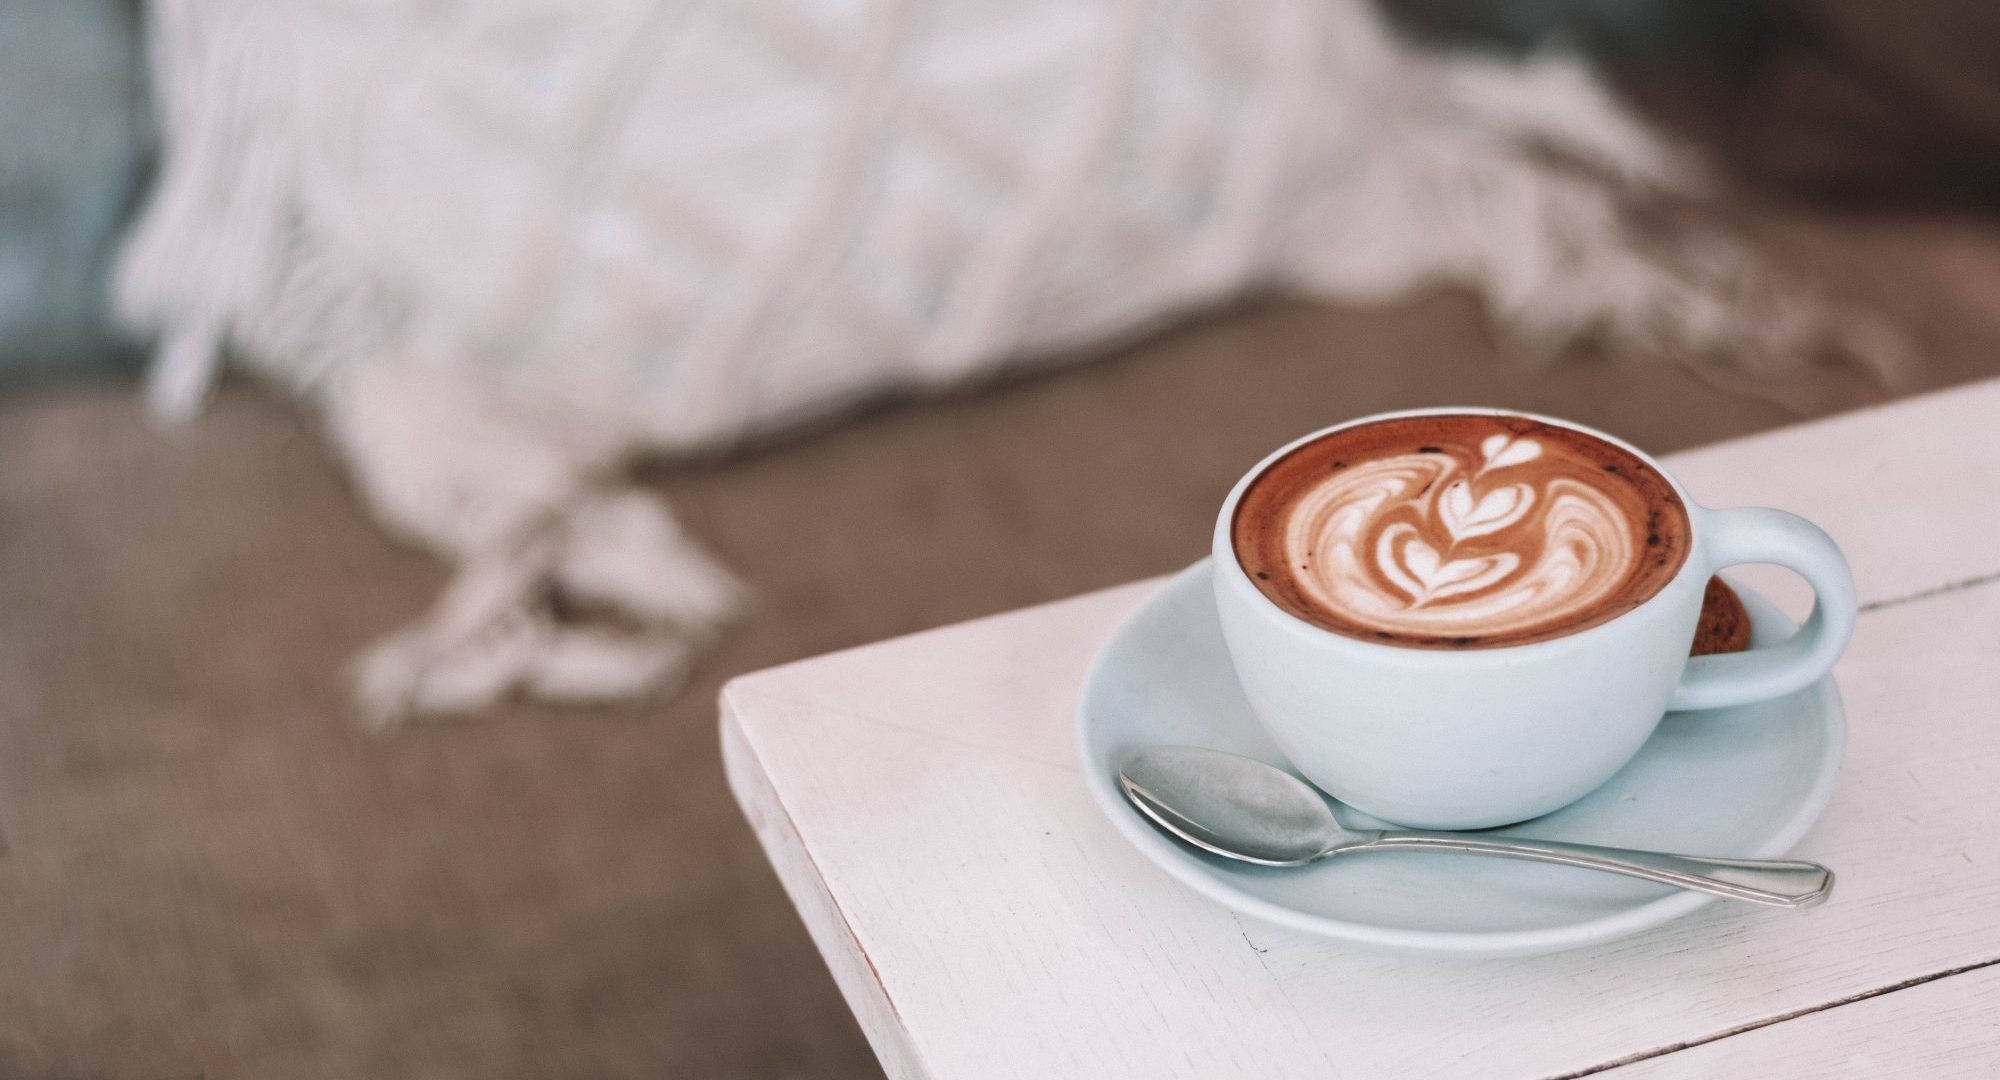 6 μύθοι για τον καφέ που ήρθε η ώρα να καταρρίψουμε